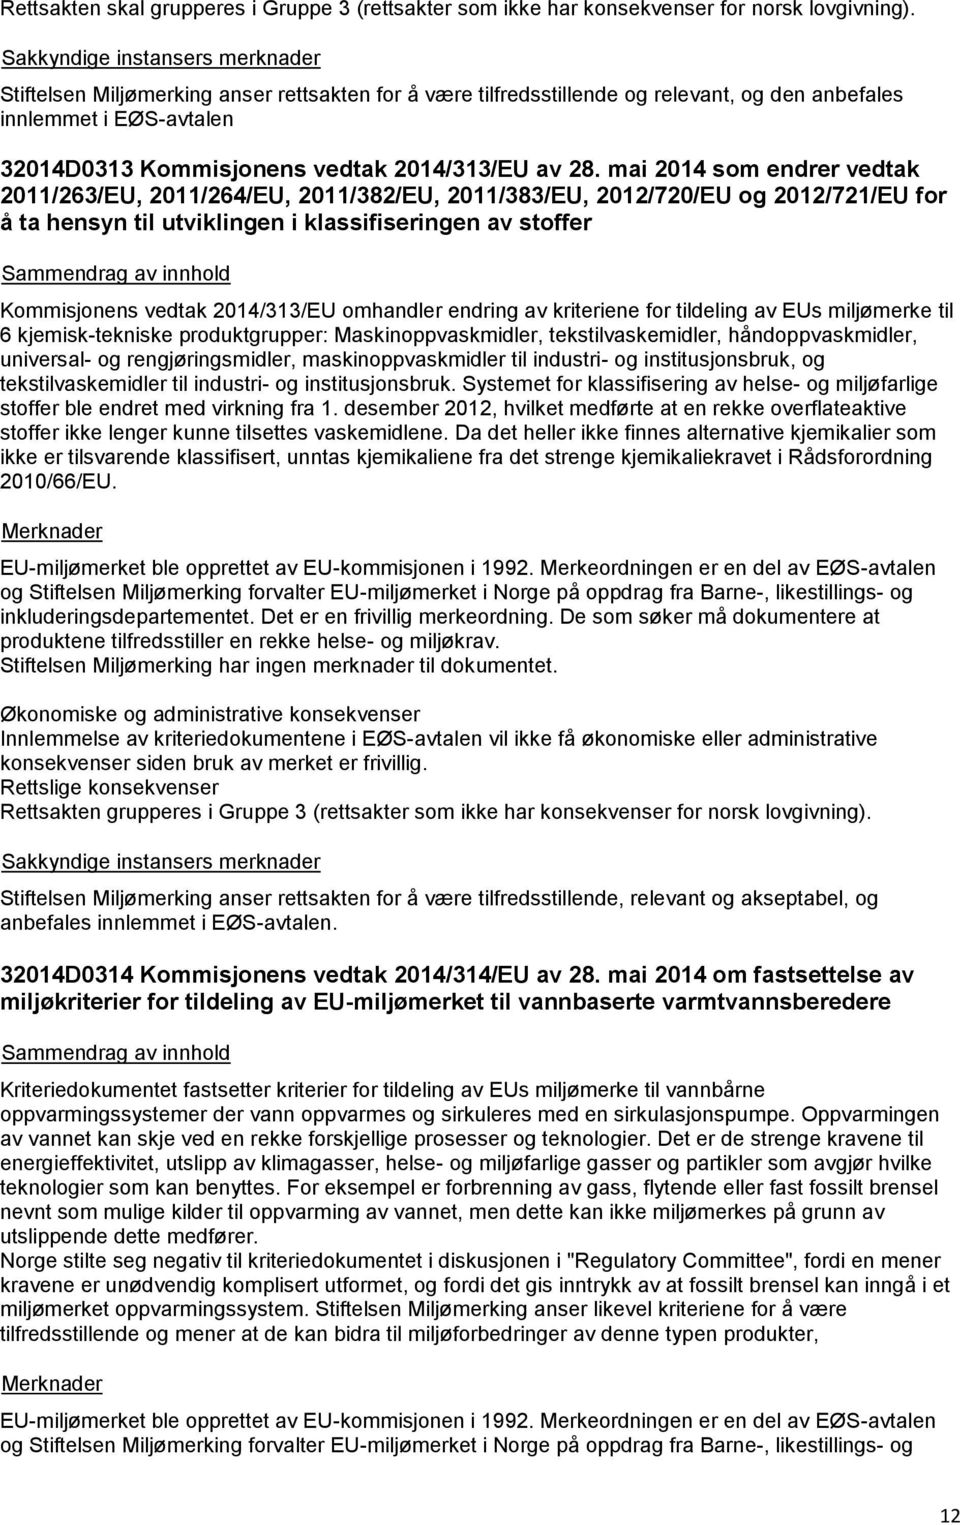 mai 2014 som endrer vedtak 2011/263/EU, 2011/264/EU, 2011/382/EU, 2011/383/EU, 2012/720/EU og 2012/721/EU for å ta hensyn til utviklingen i klassifiseringen av stoffer Kommisjonens vedtak 2014/313/EU